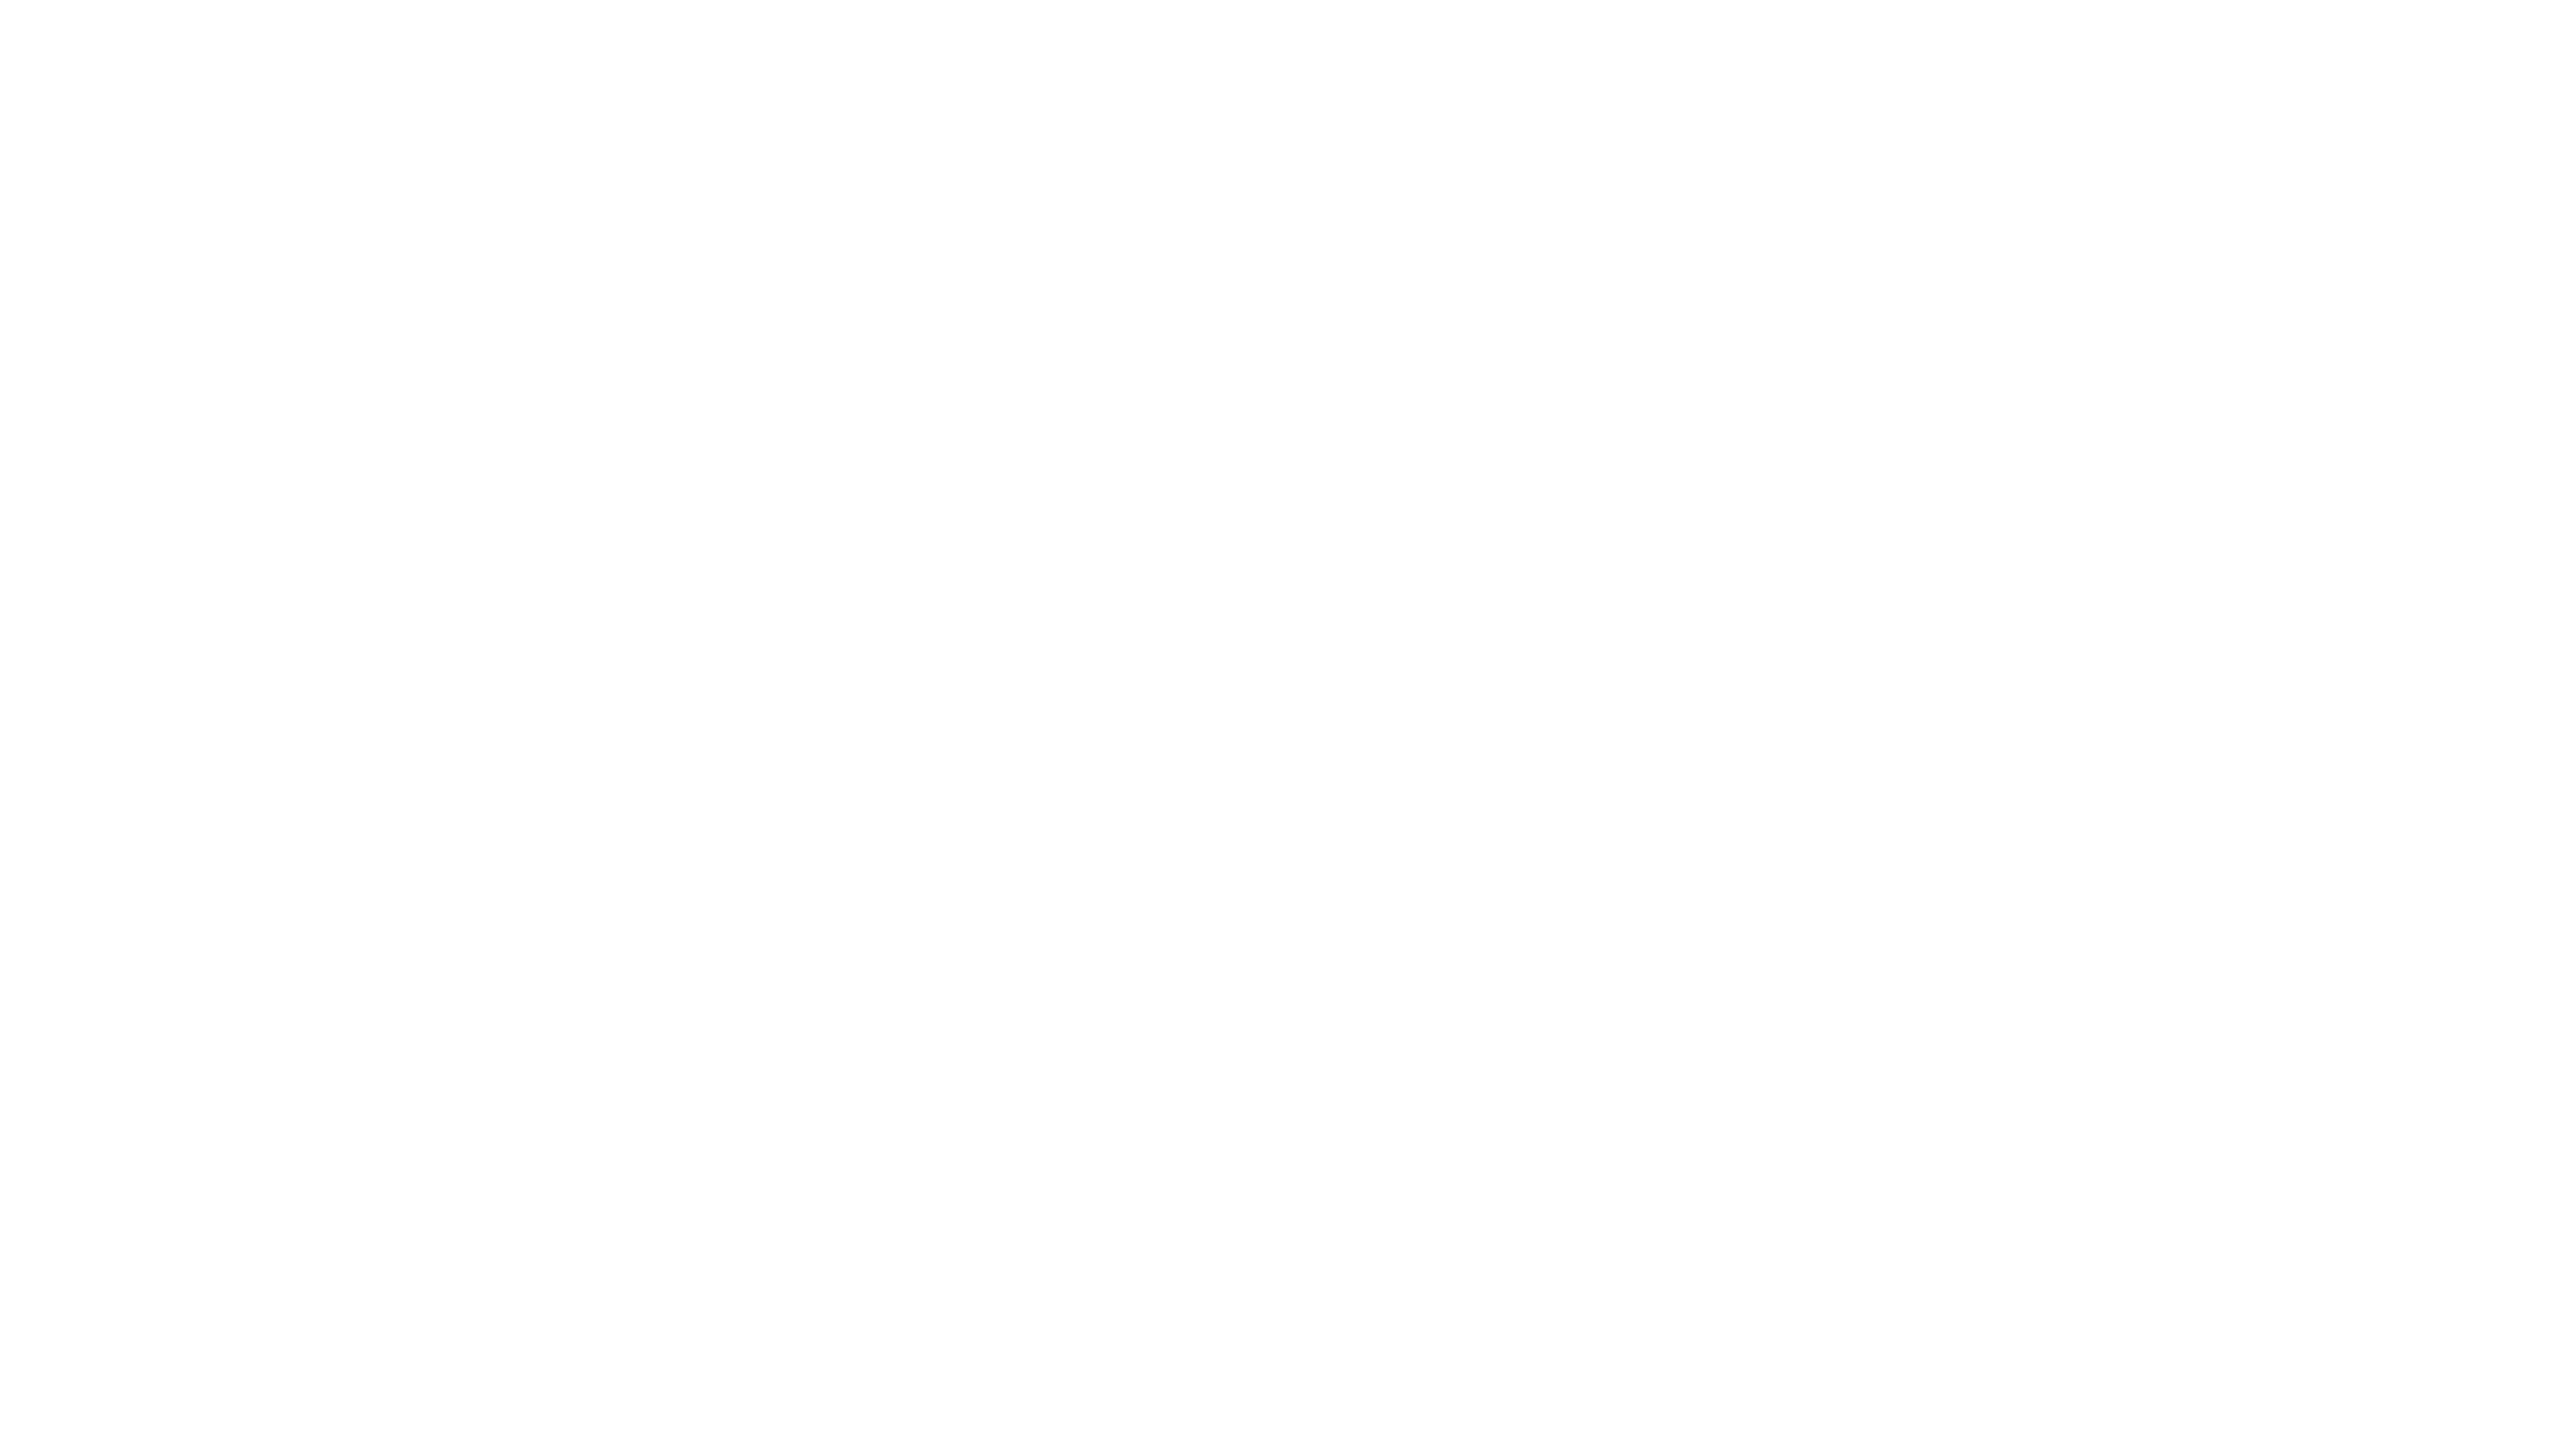 epix-logo.c5ad9a8d